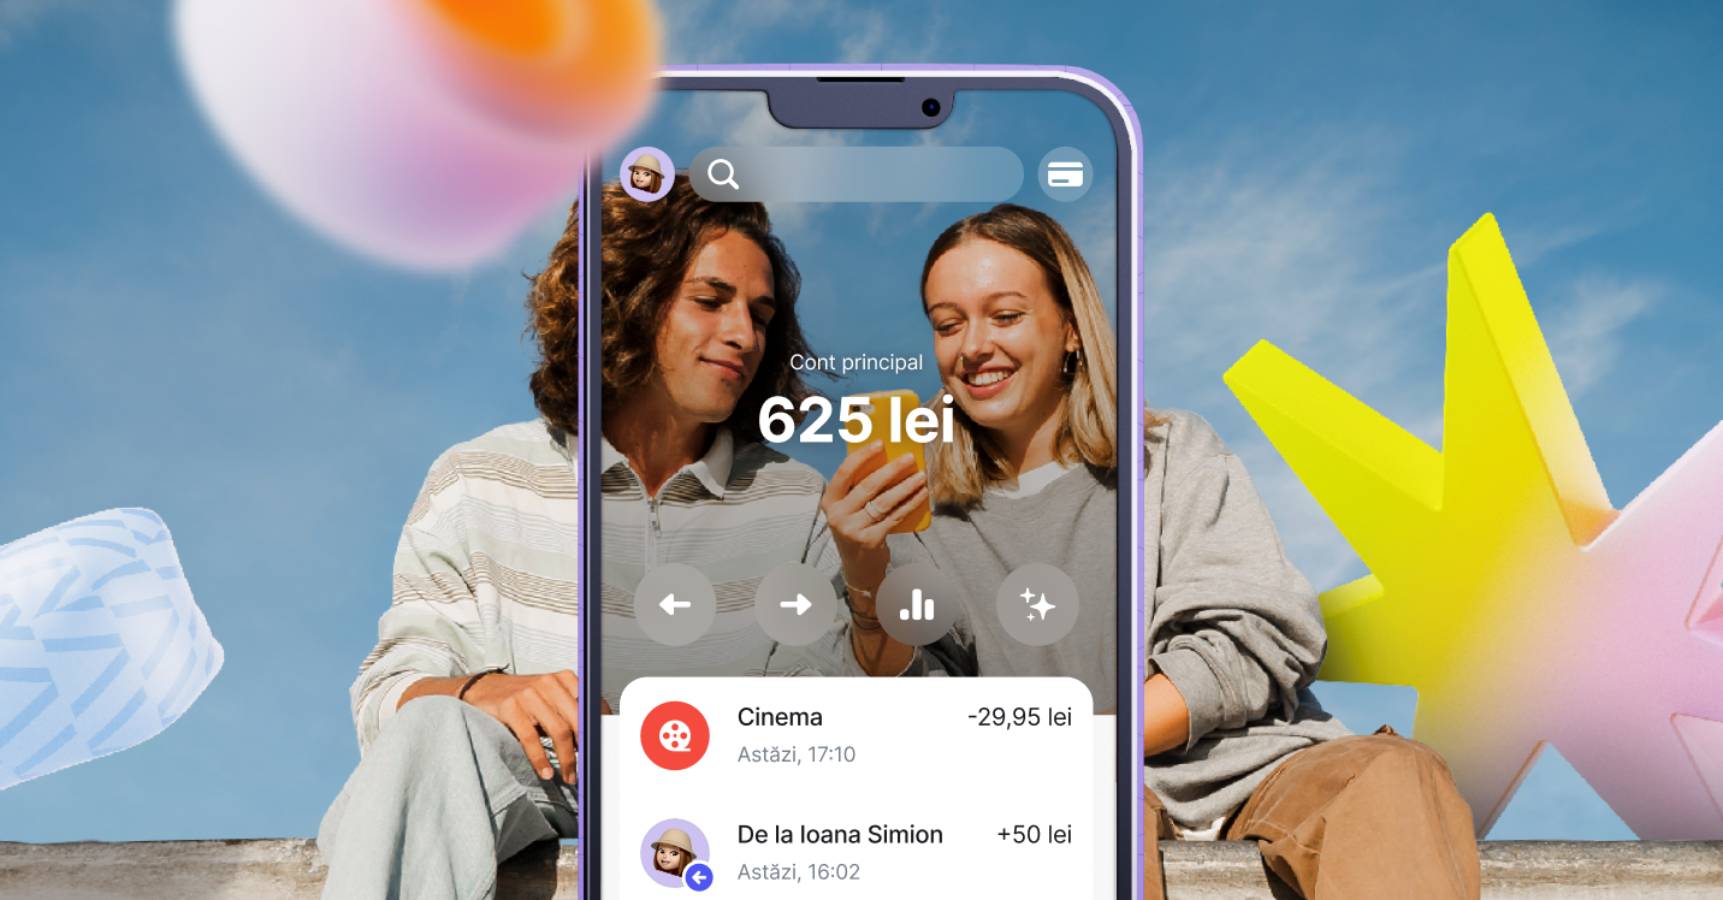 Revolut heeft meer dan 2 miljoen kleine gebruikers van de iDevice.ro Mobile Banking-applicatie